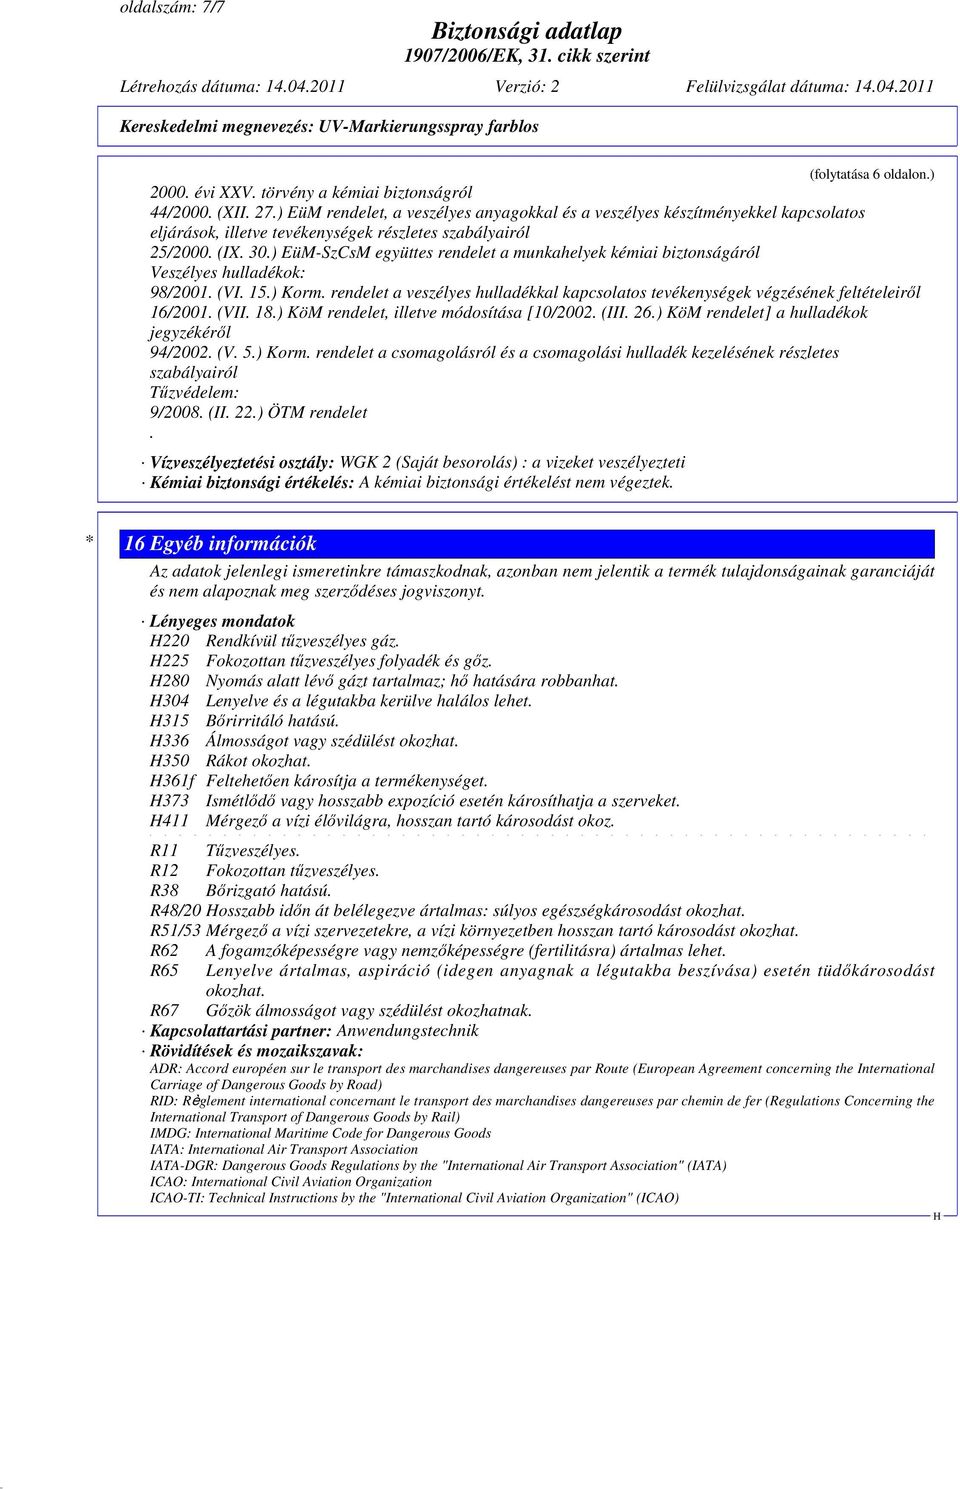 ) EüM-SzCsM együttes rendelet a munkahelyek kémiai biztonságáról Veszélyes hulladékok: 98/2001. (VI. 15.) Korm.